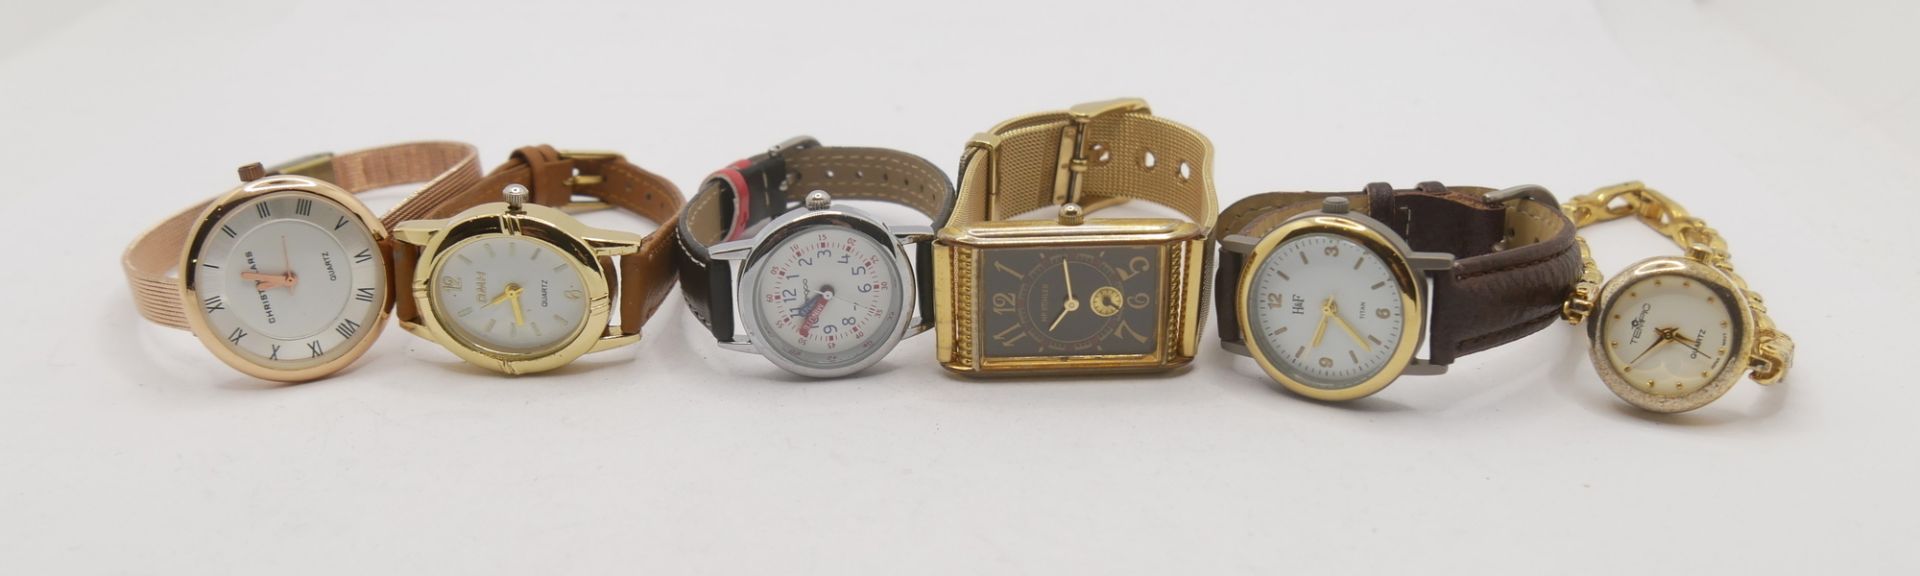 Lot Armbanduhren, insgesamt 6 Stück. Funktion nicht geprüft